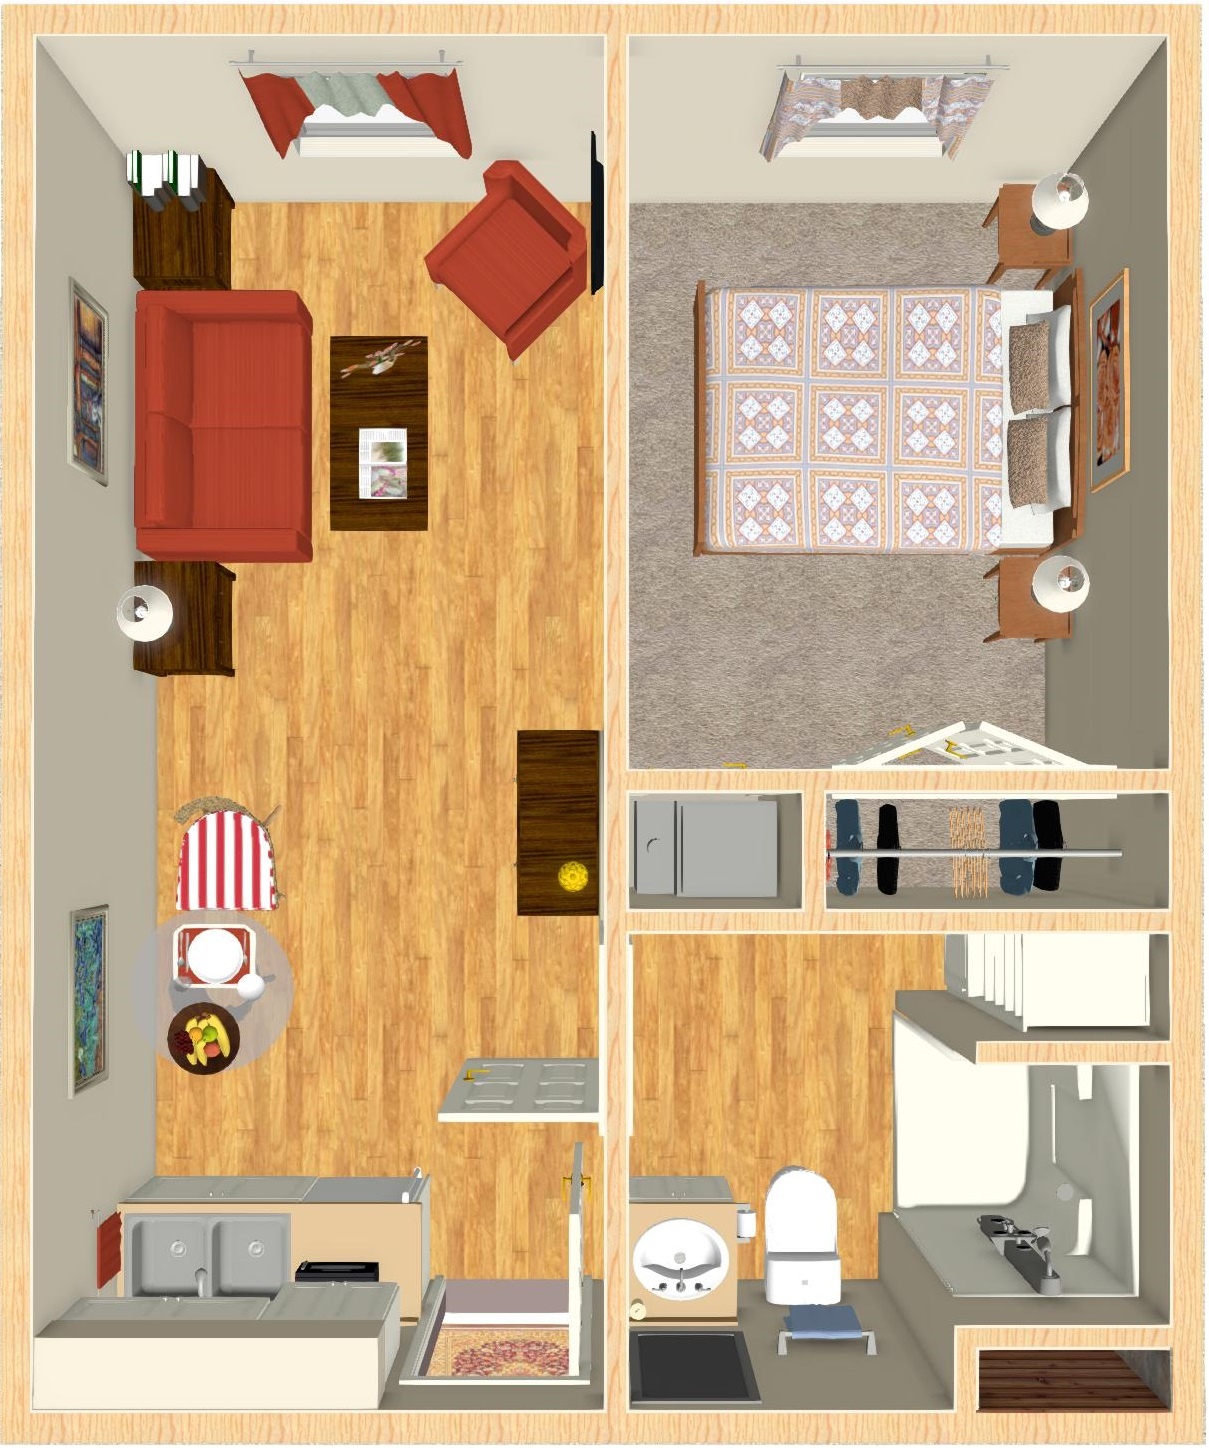 Cottonwood Studio floor plan